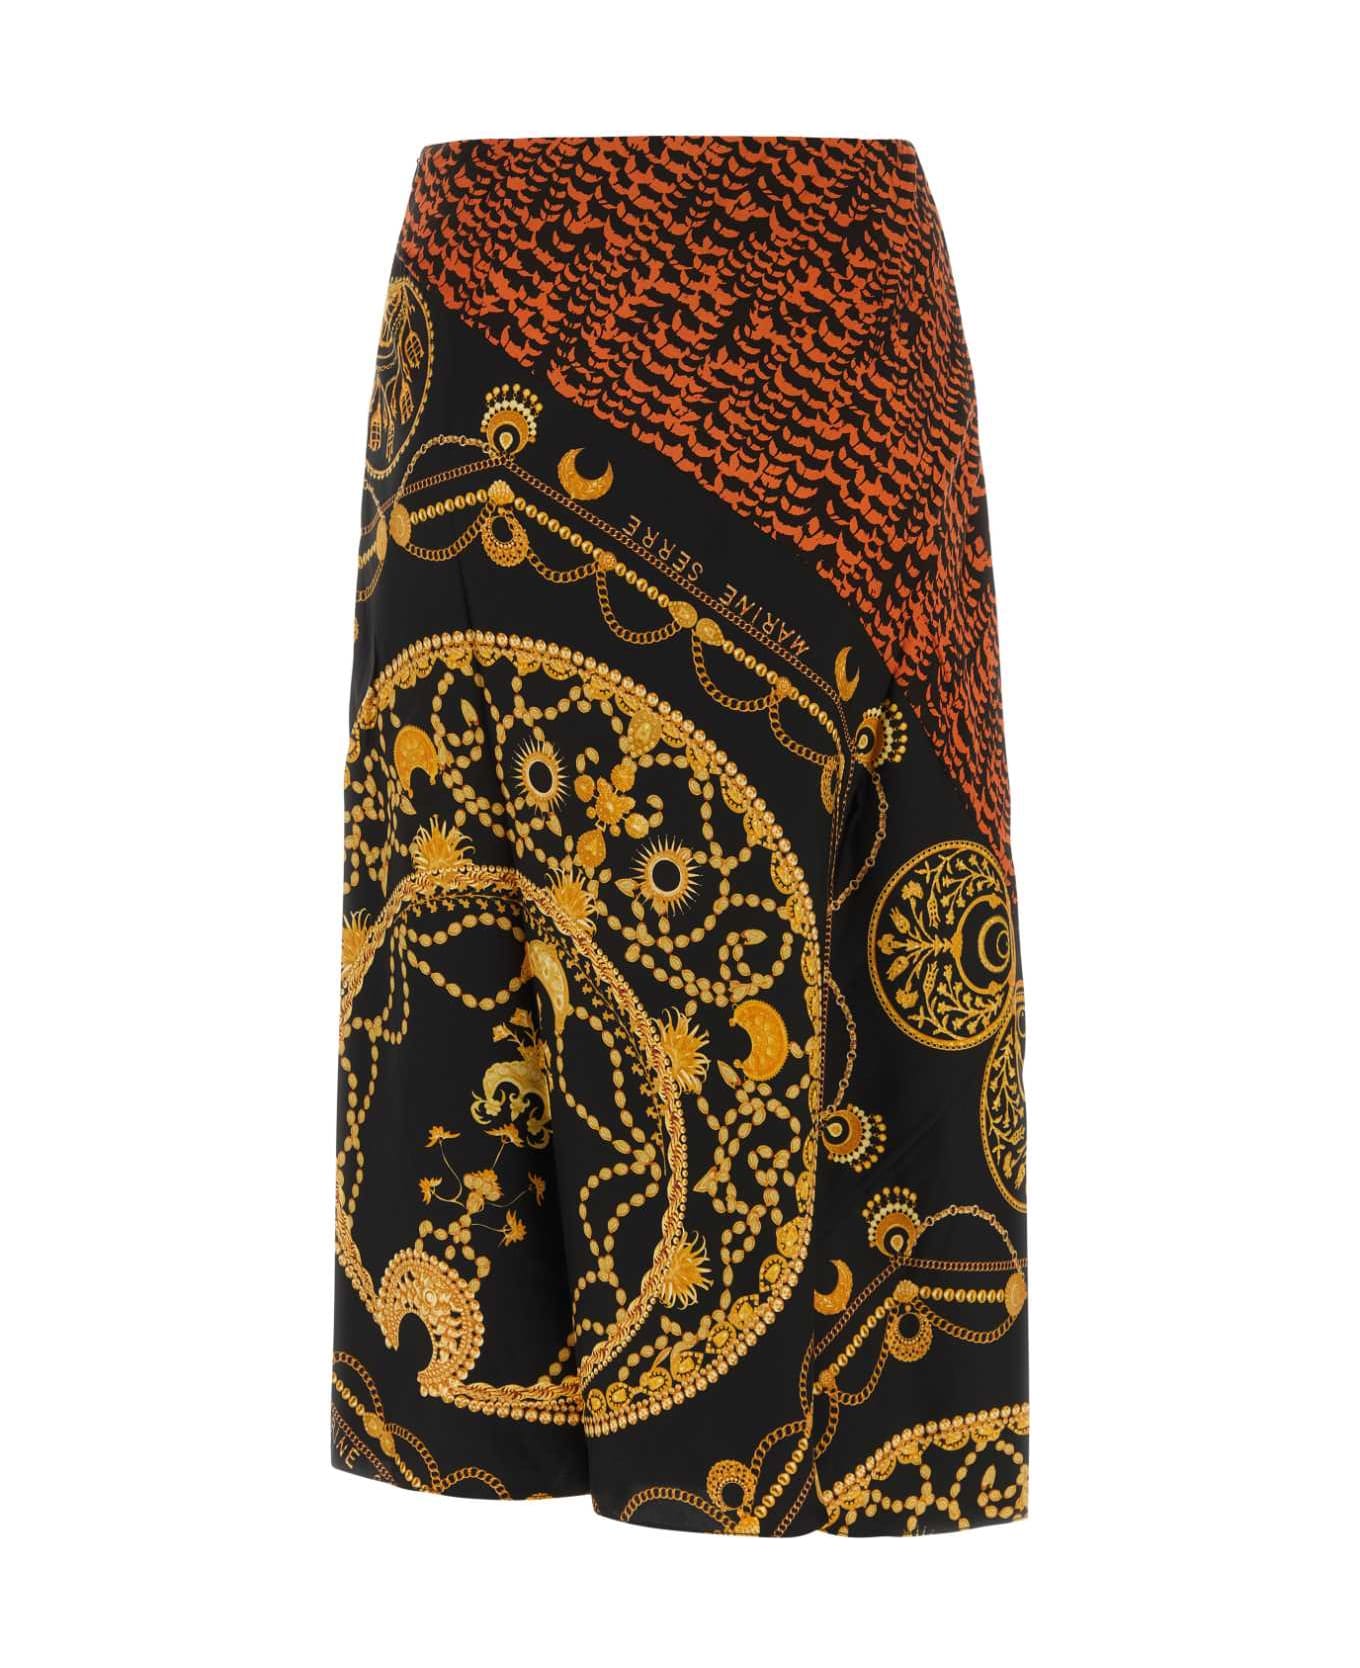 Marine Serre Printed Satin Skirt - Multicolor